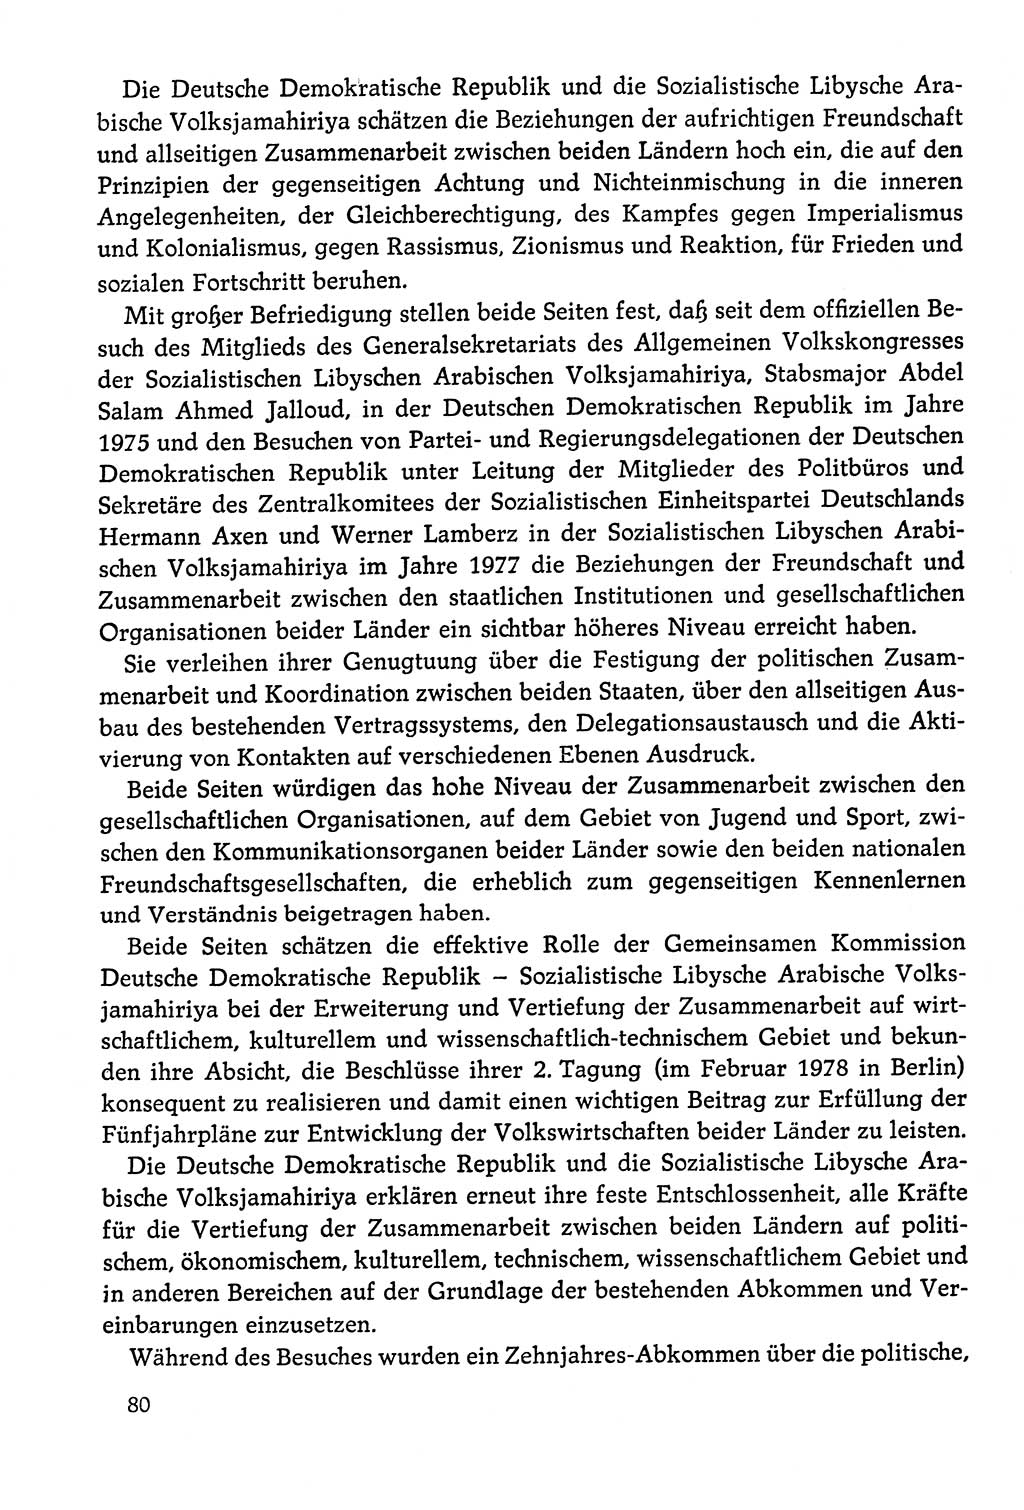 Dokumente der Sozialistischen Einheitspartei Deutschlands (SED) [Deutsche Demokratische Republik (DDR)] 1978-1979, Seite 80 (Dok. SED DDR 1978-1979, S. 80)